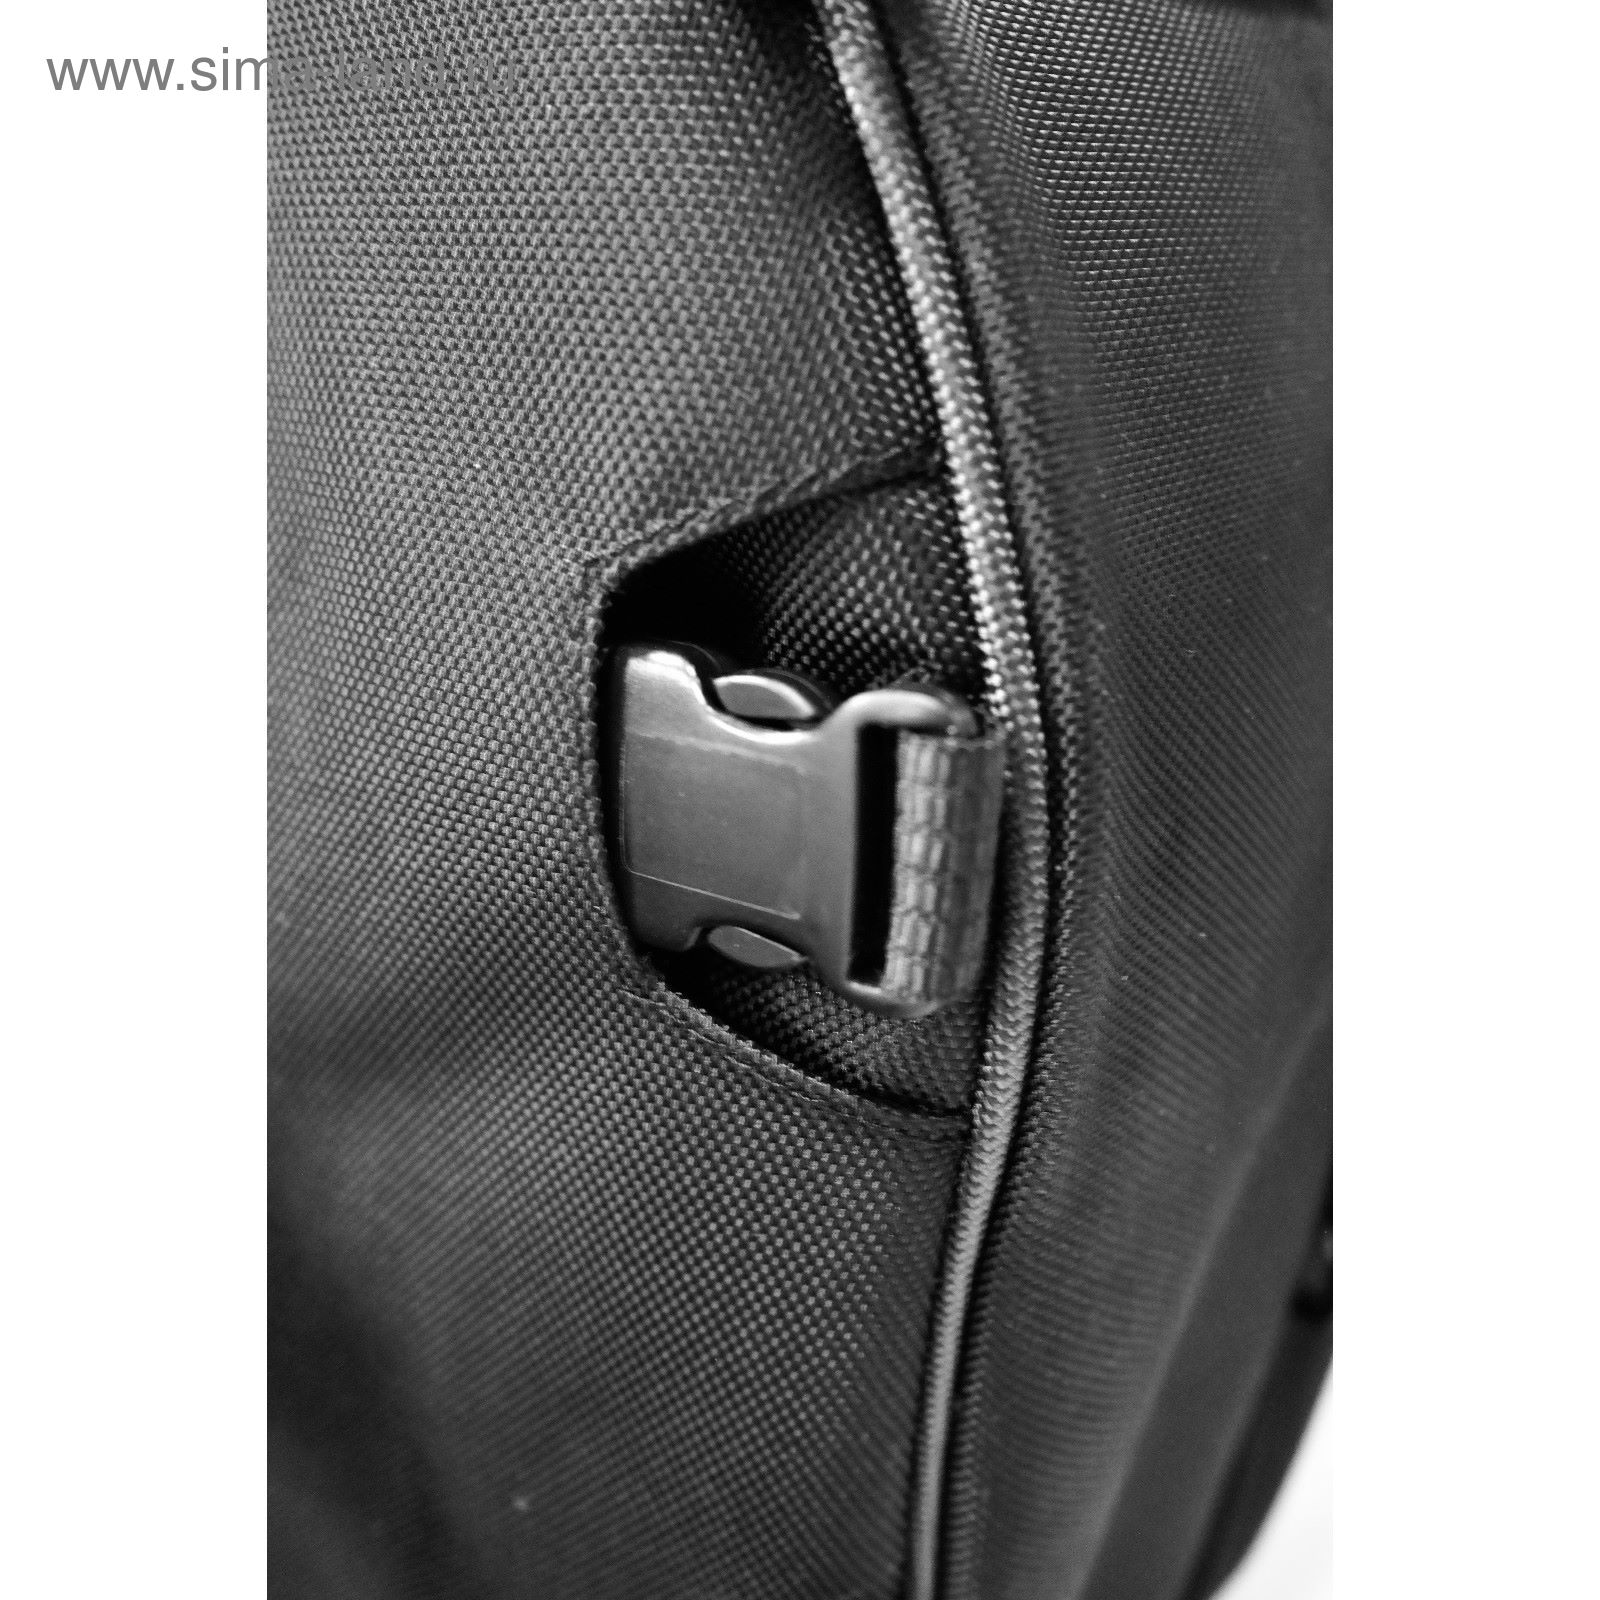 Багажные сумки на хвост SBL 50 черный